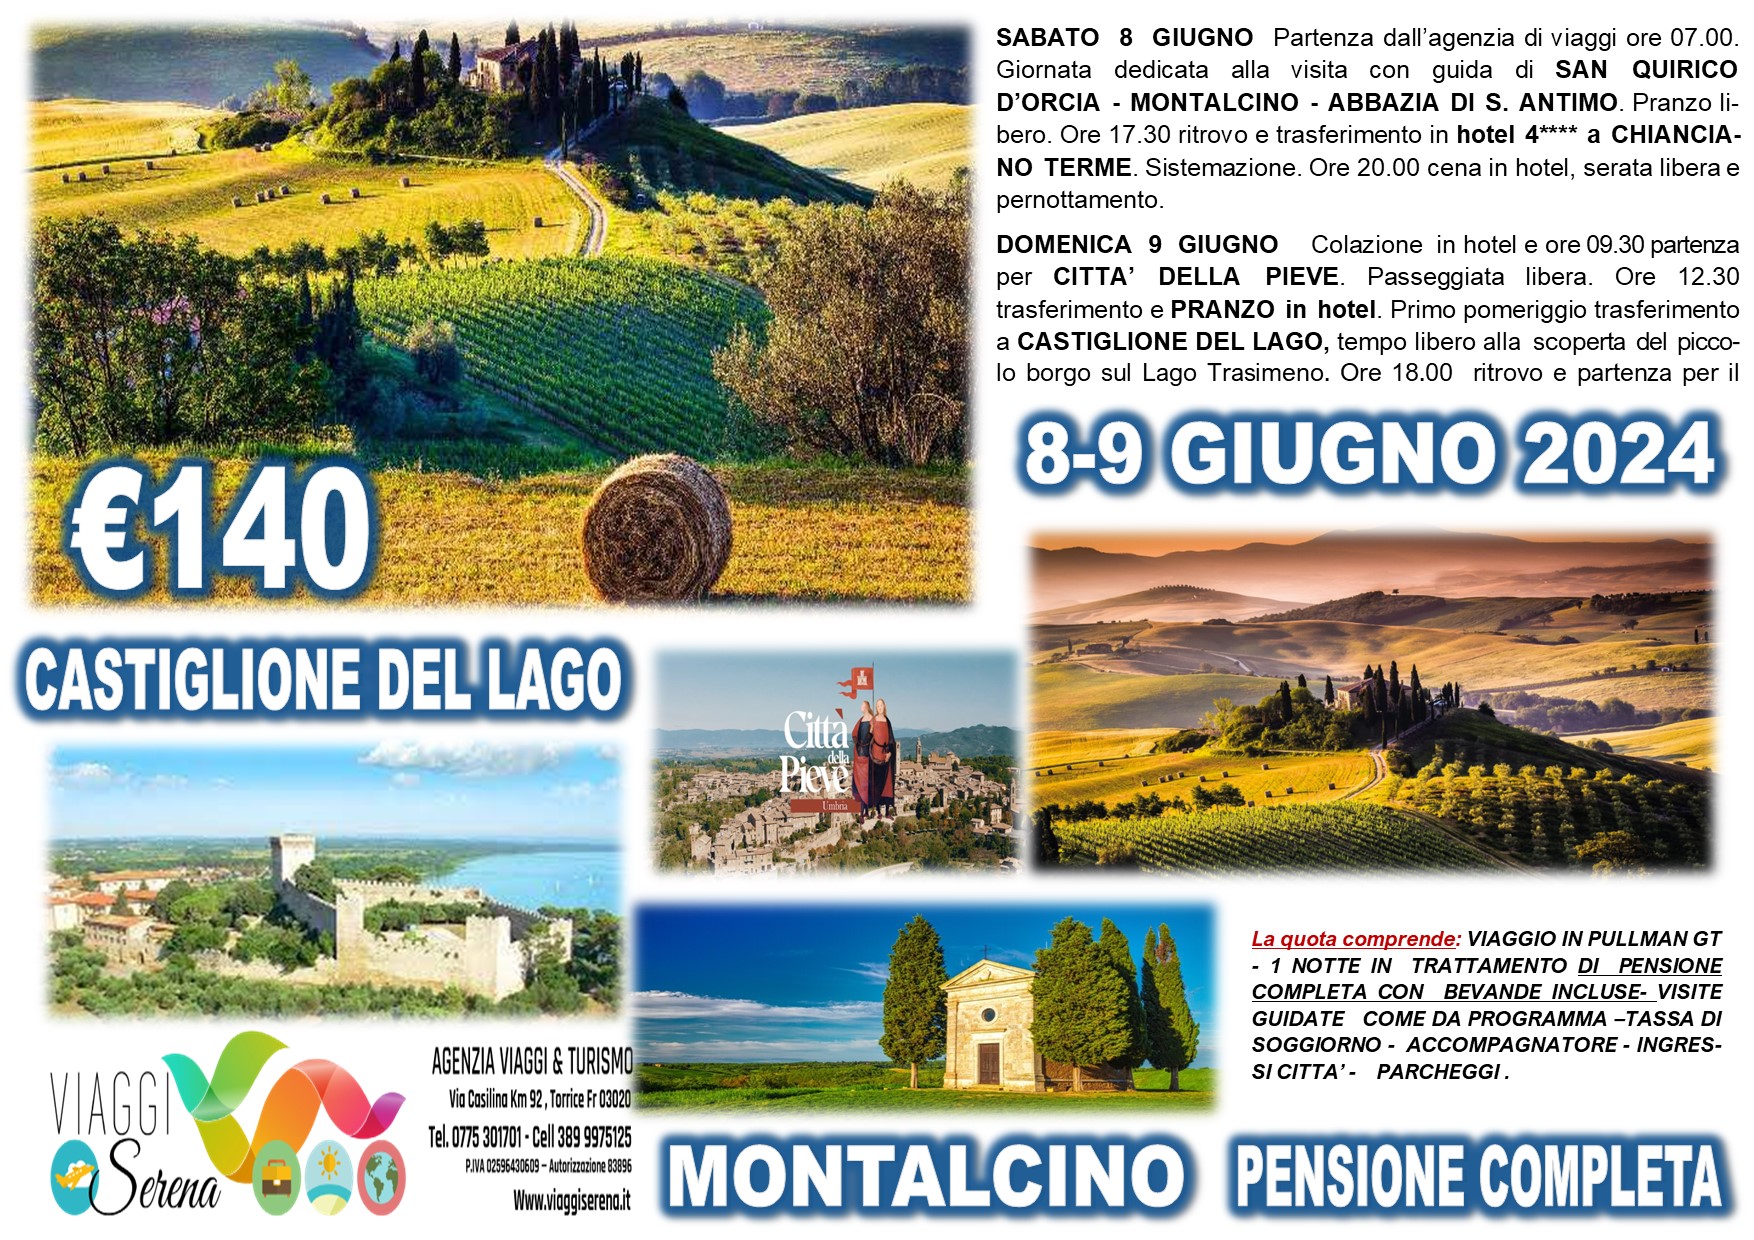 Viaggi di gruppo: Tour Toscana & Umbria Castiglione del Lago, Montalcino e Citta’ della Pieve 8-9 Giugno € 140,00